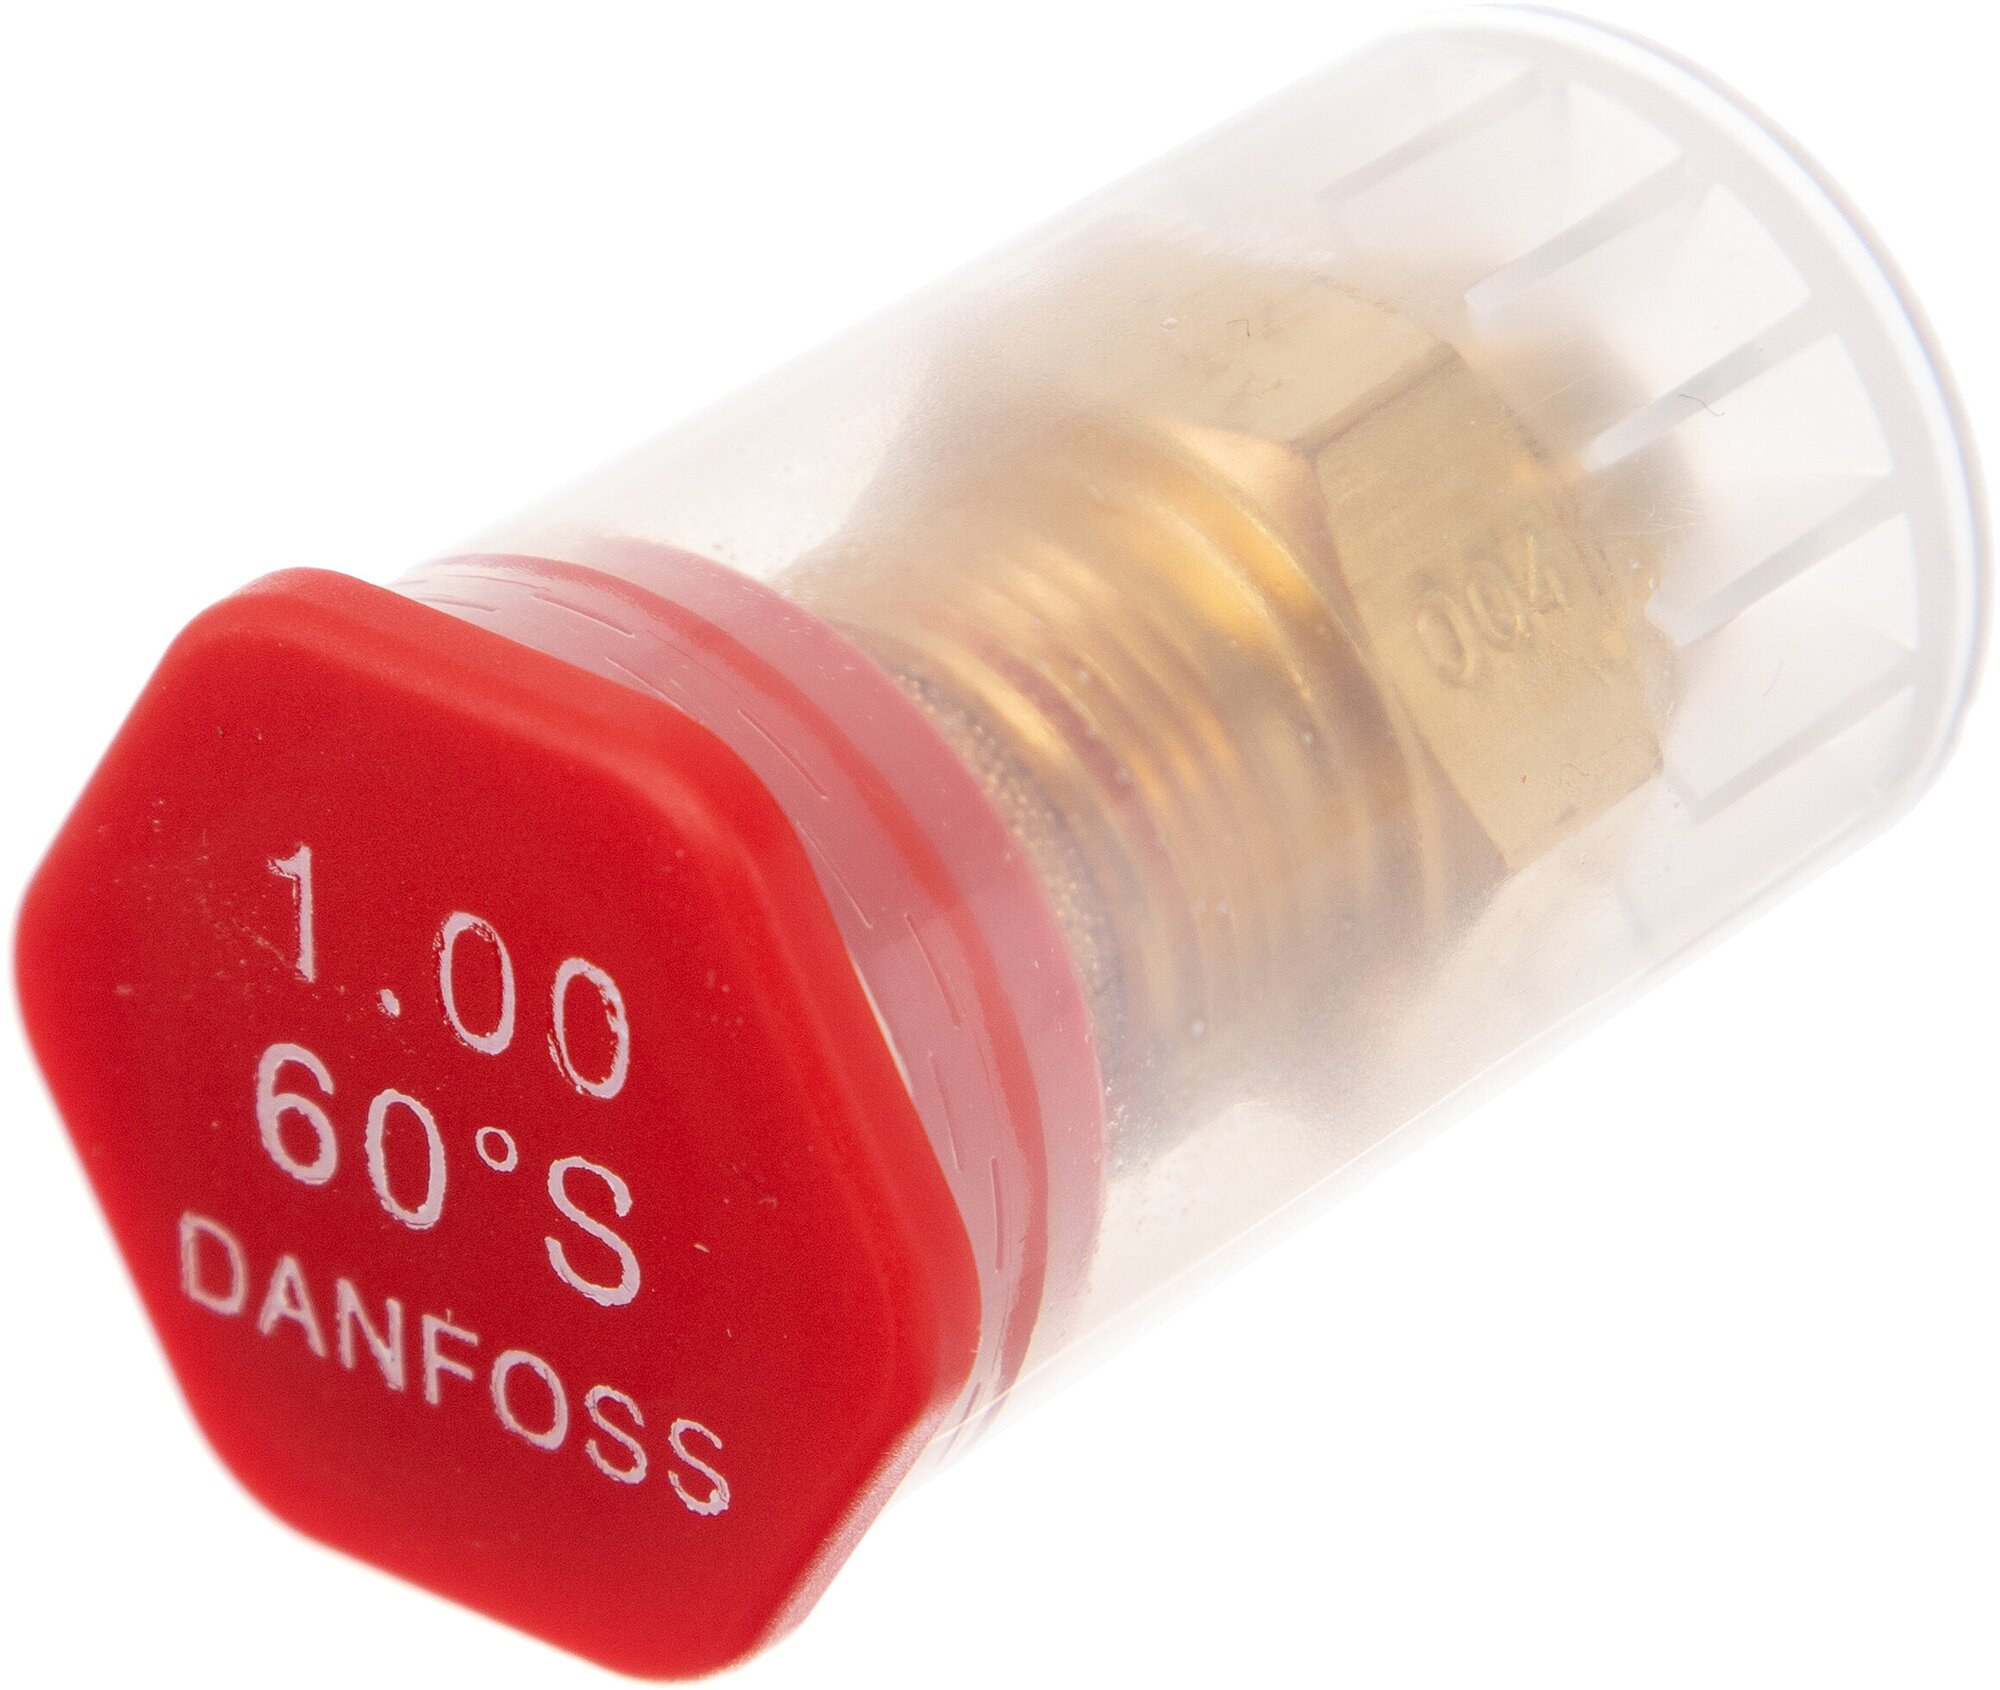 Форсунка для дизельного топлива DANFOSS 1.00 gal/h 3.72 kg/h * 60 S. 030F6920